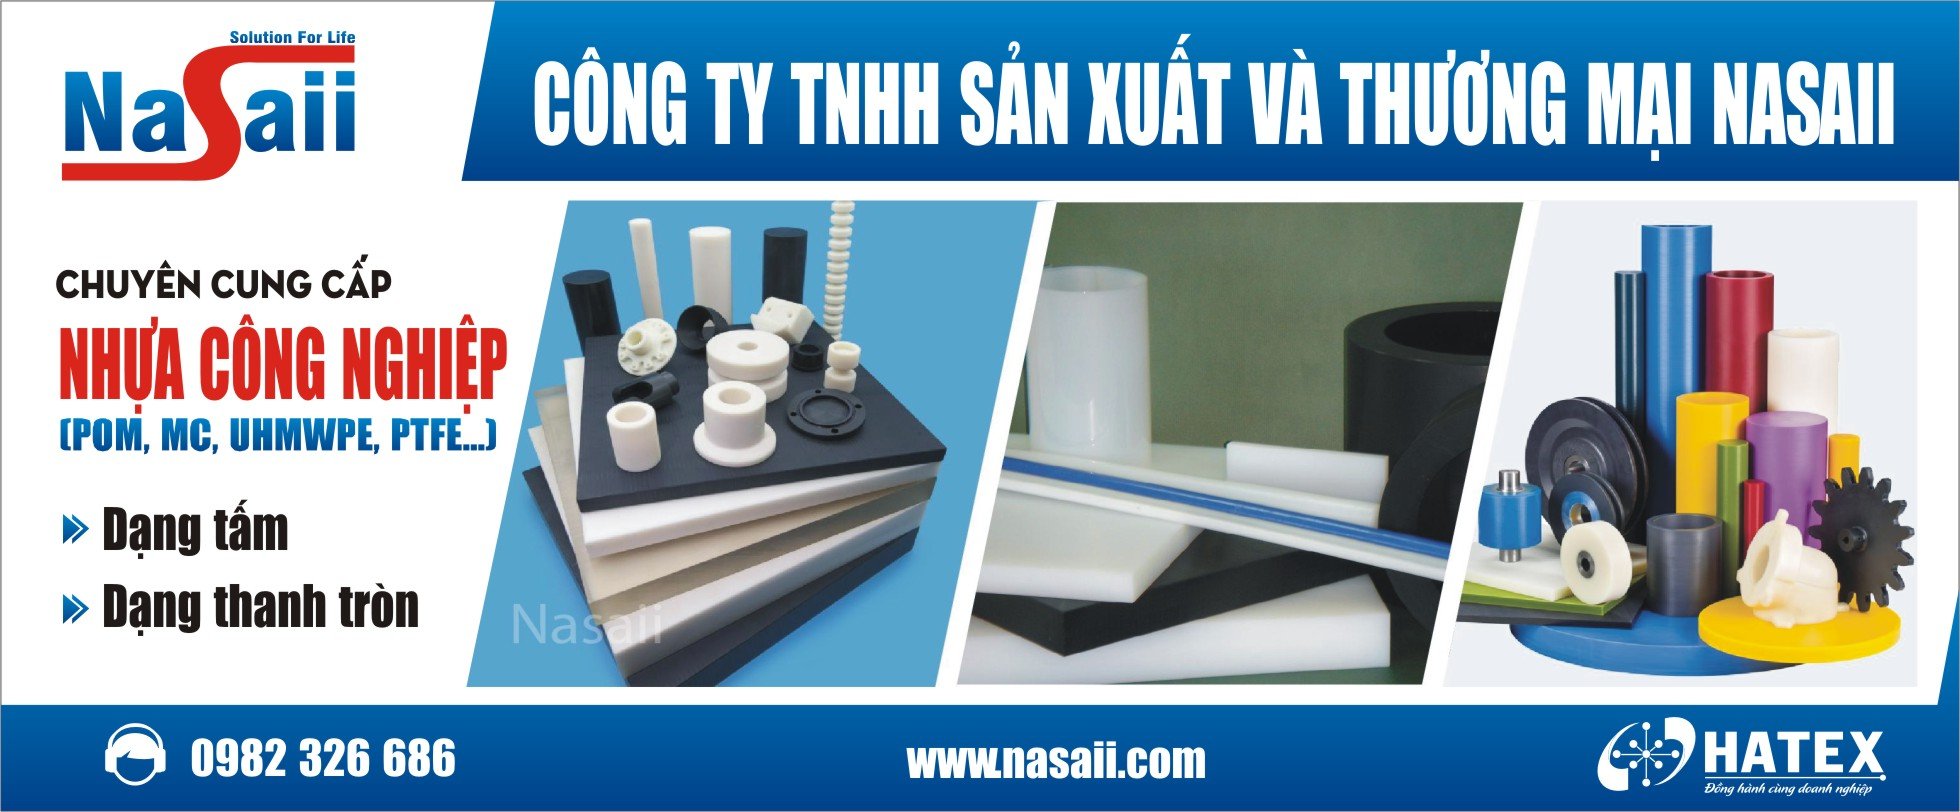 Công ty TNHH Sản xuất và Thương mại Nasaii